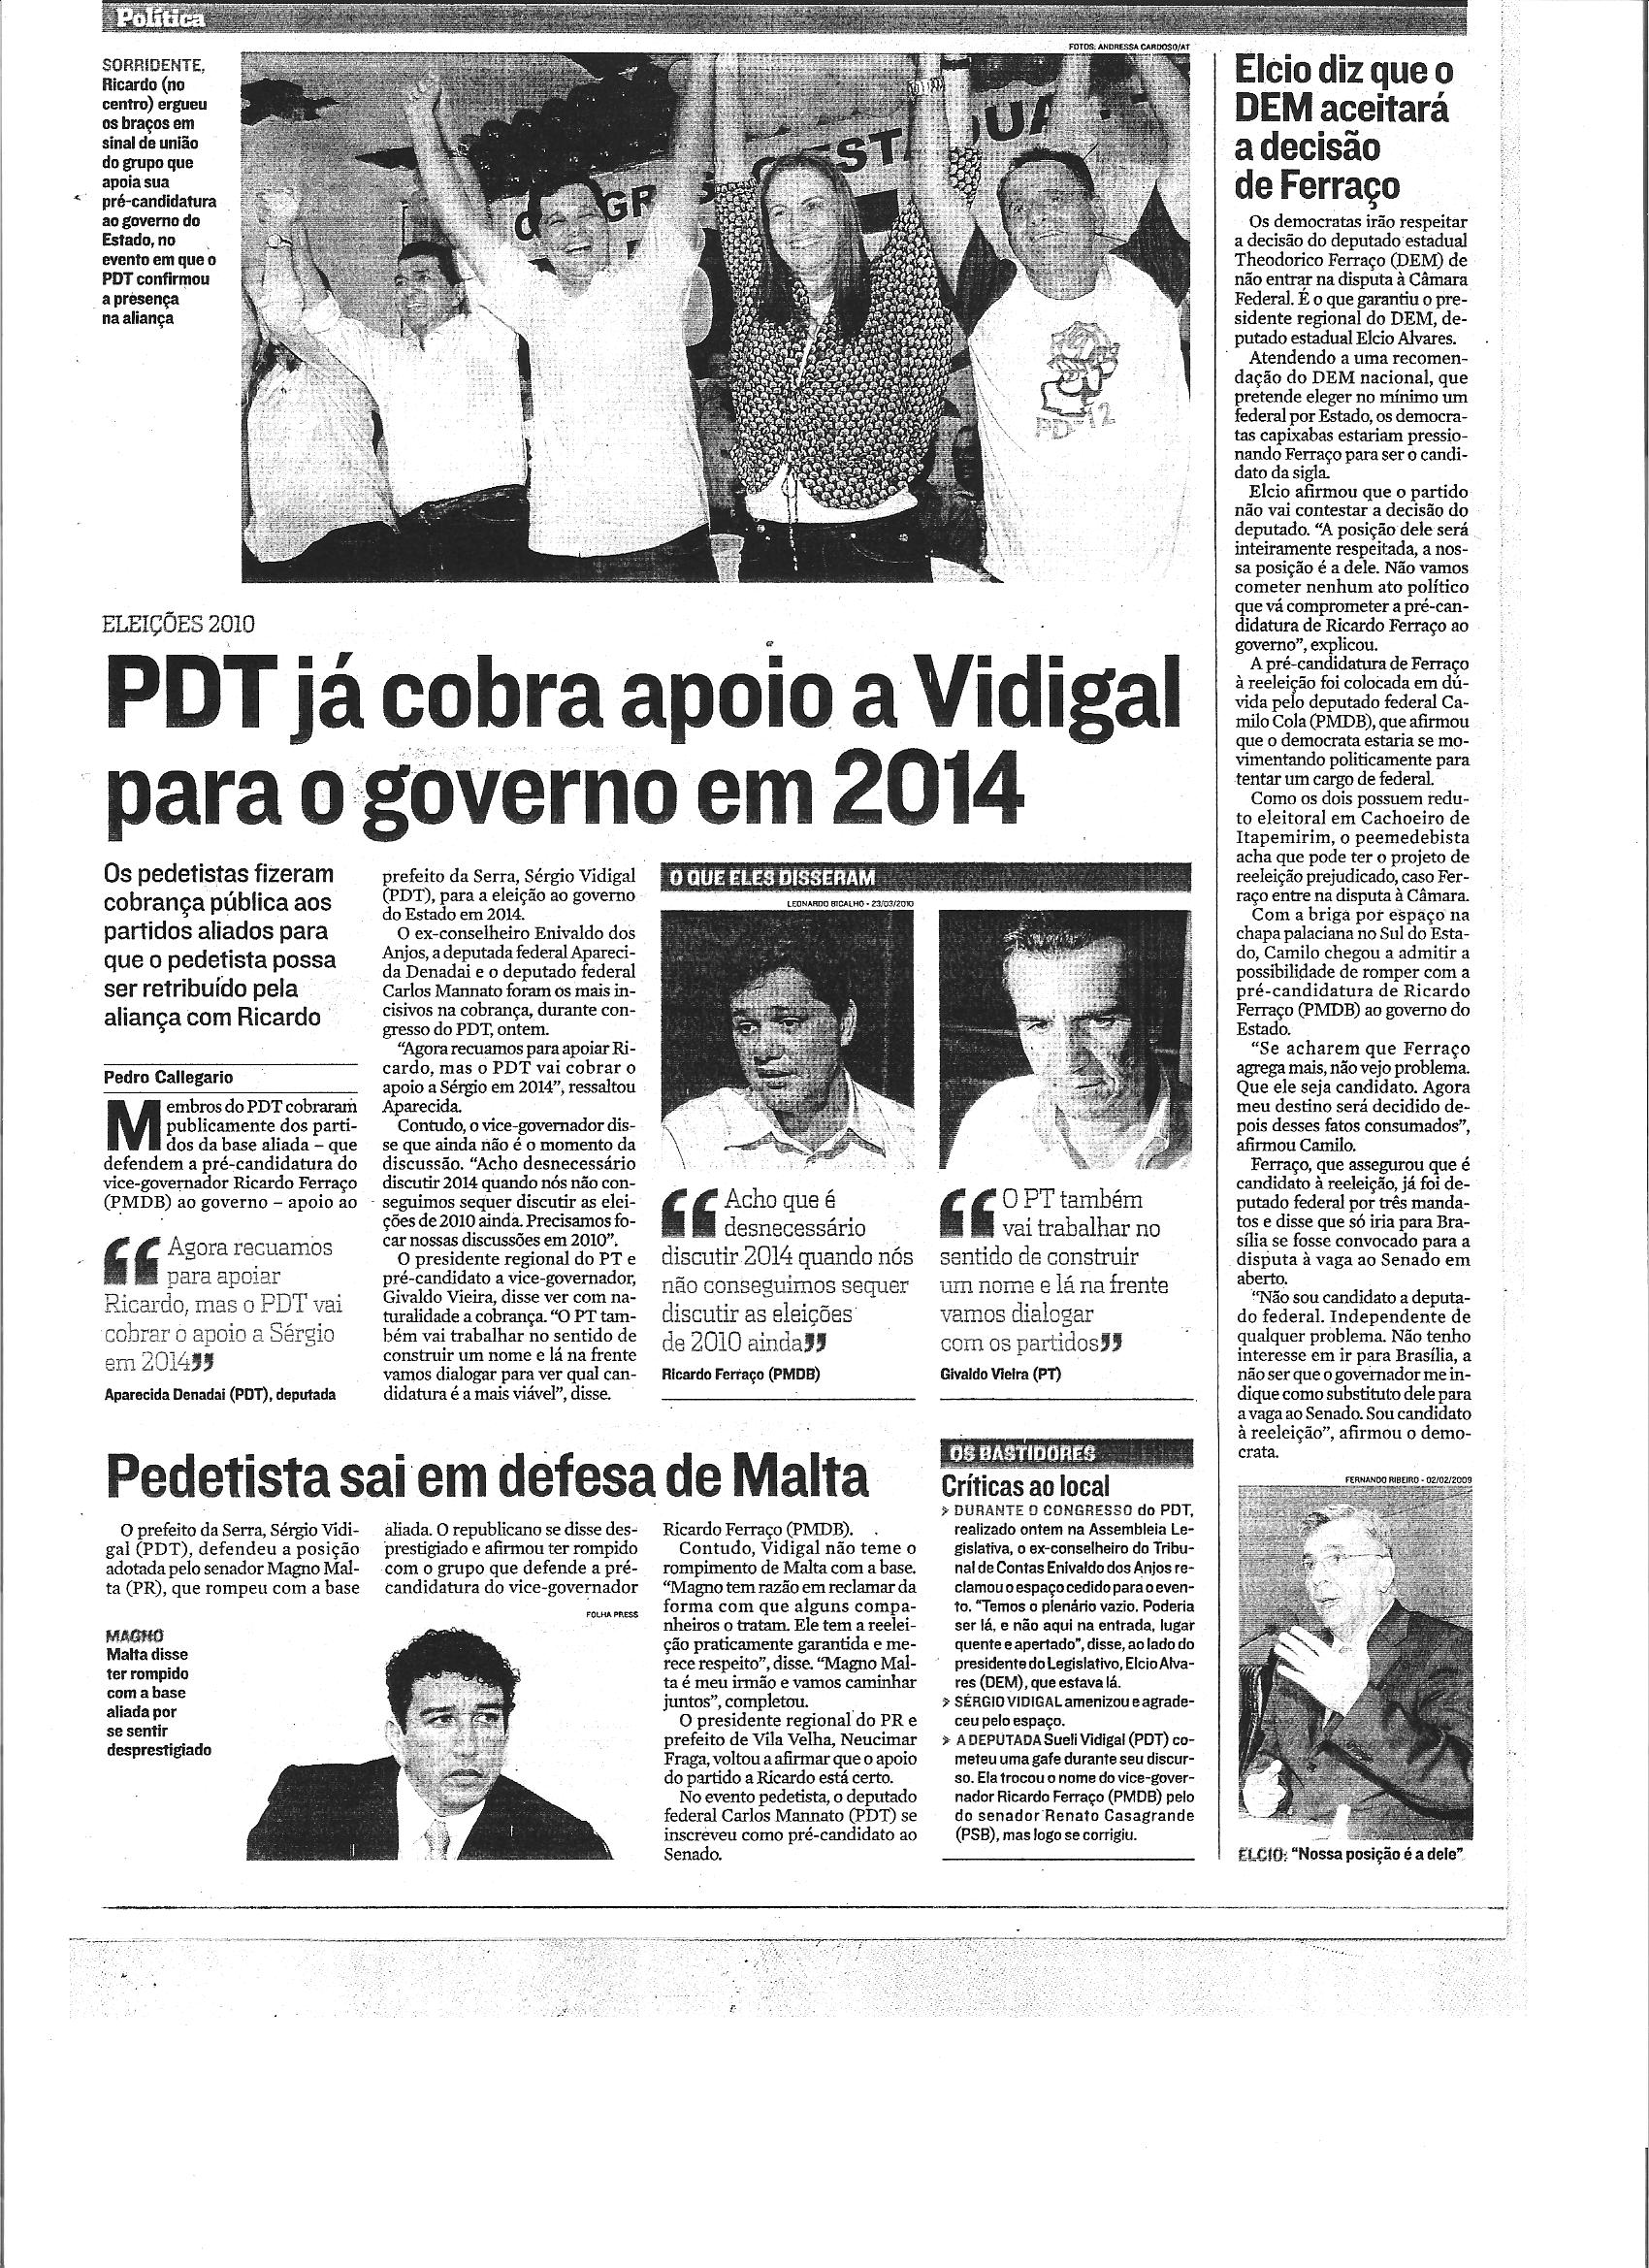 Política - PDT já cobra apoio a Vidigal para o governo em 2014